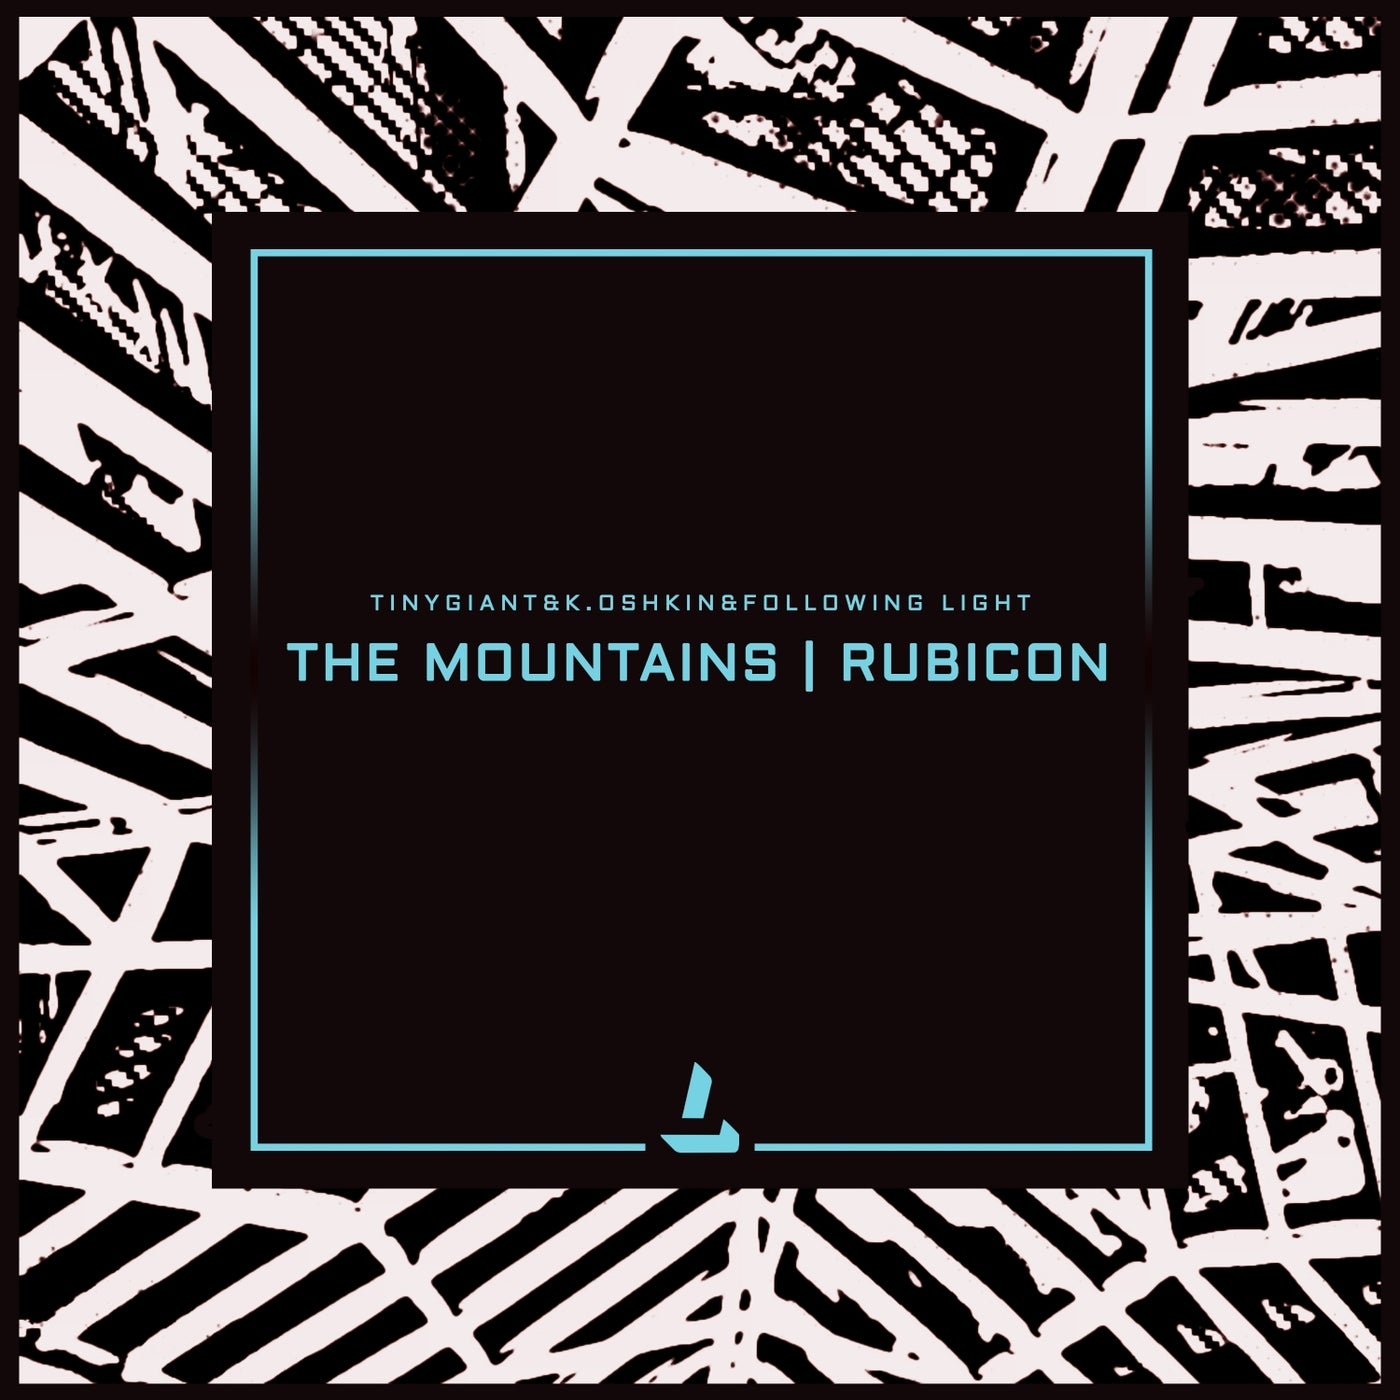 The Mountains / Rubicon